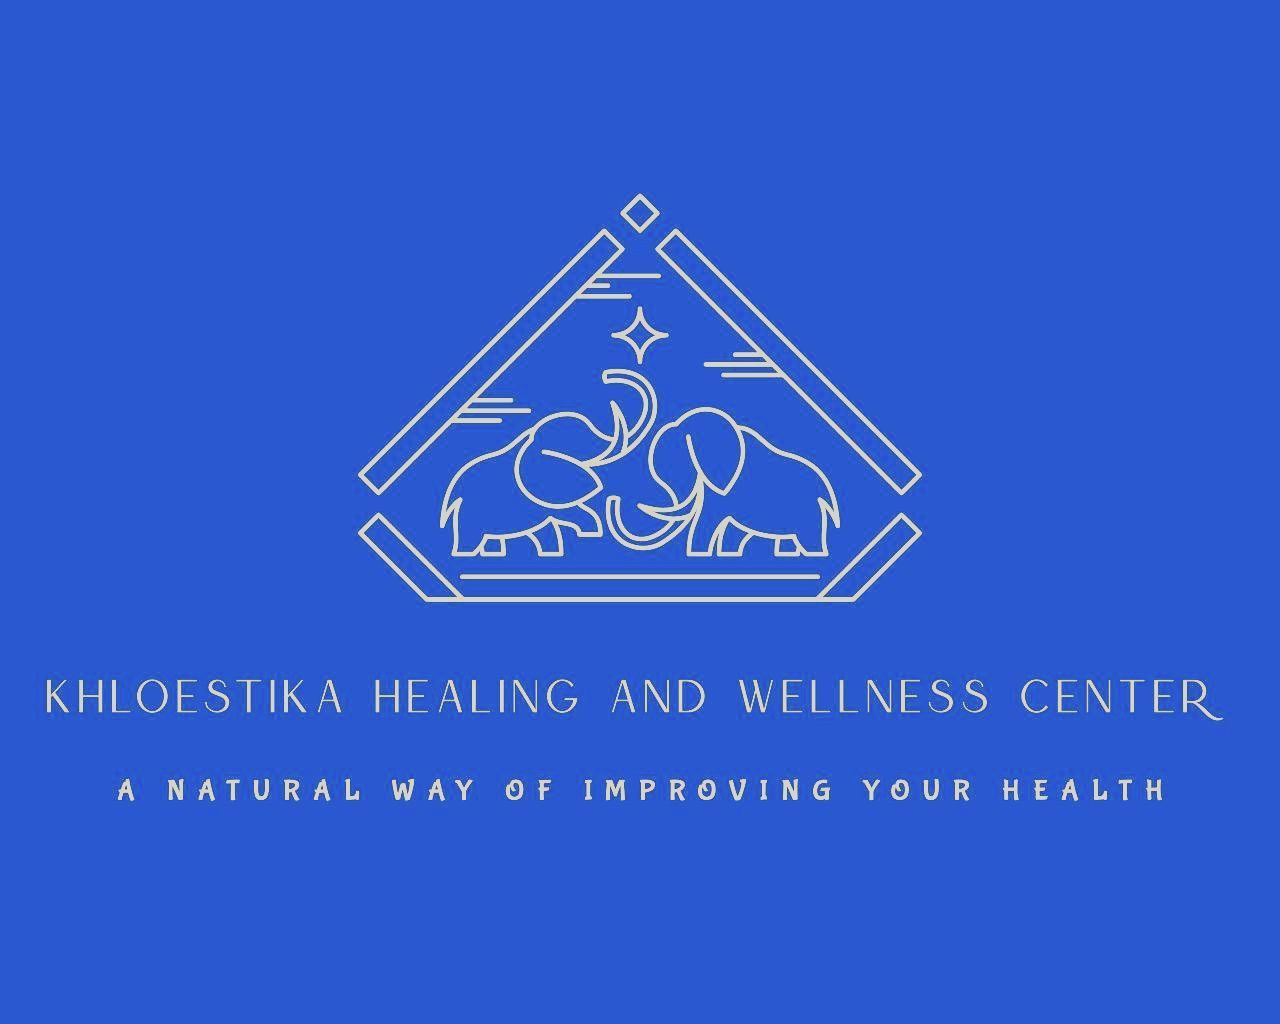 Khloestika Healing and Wellness